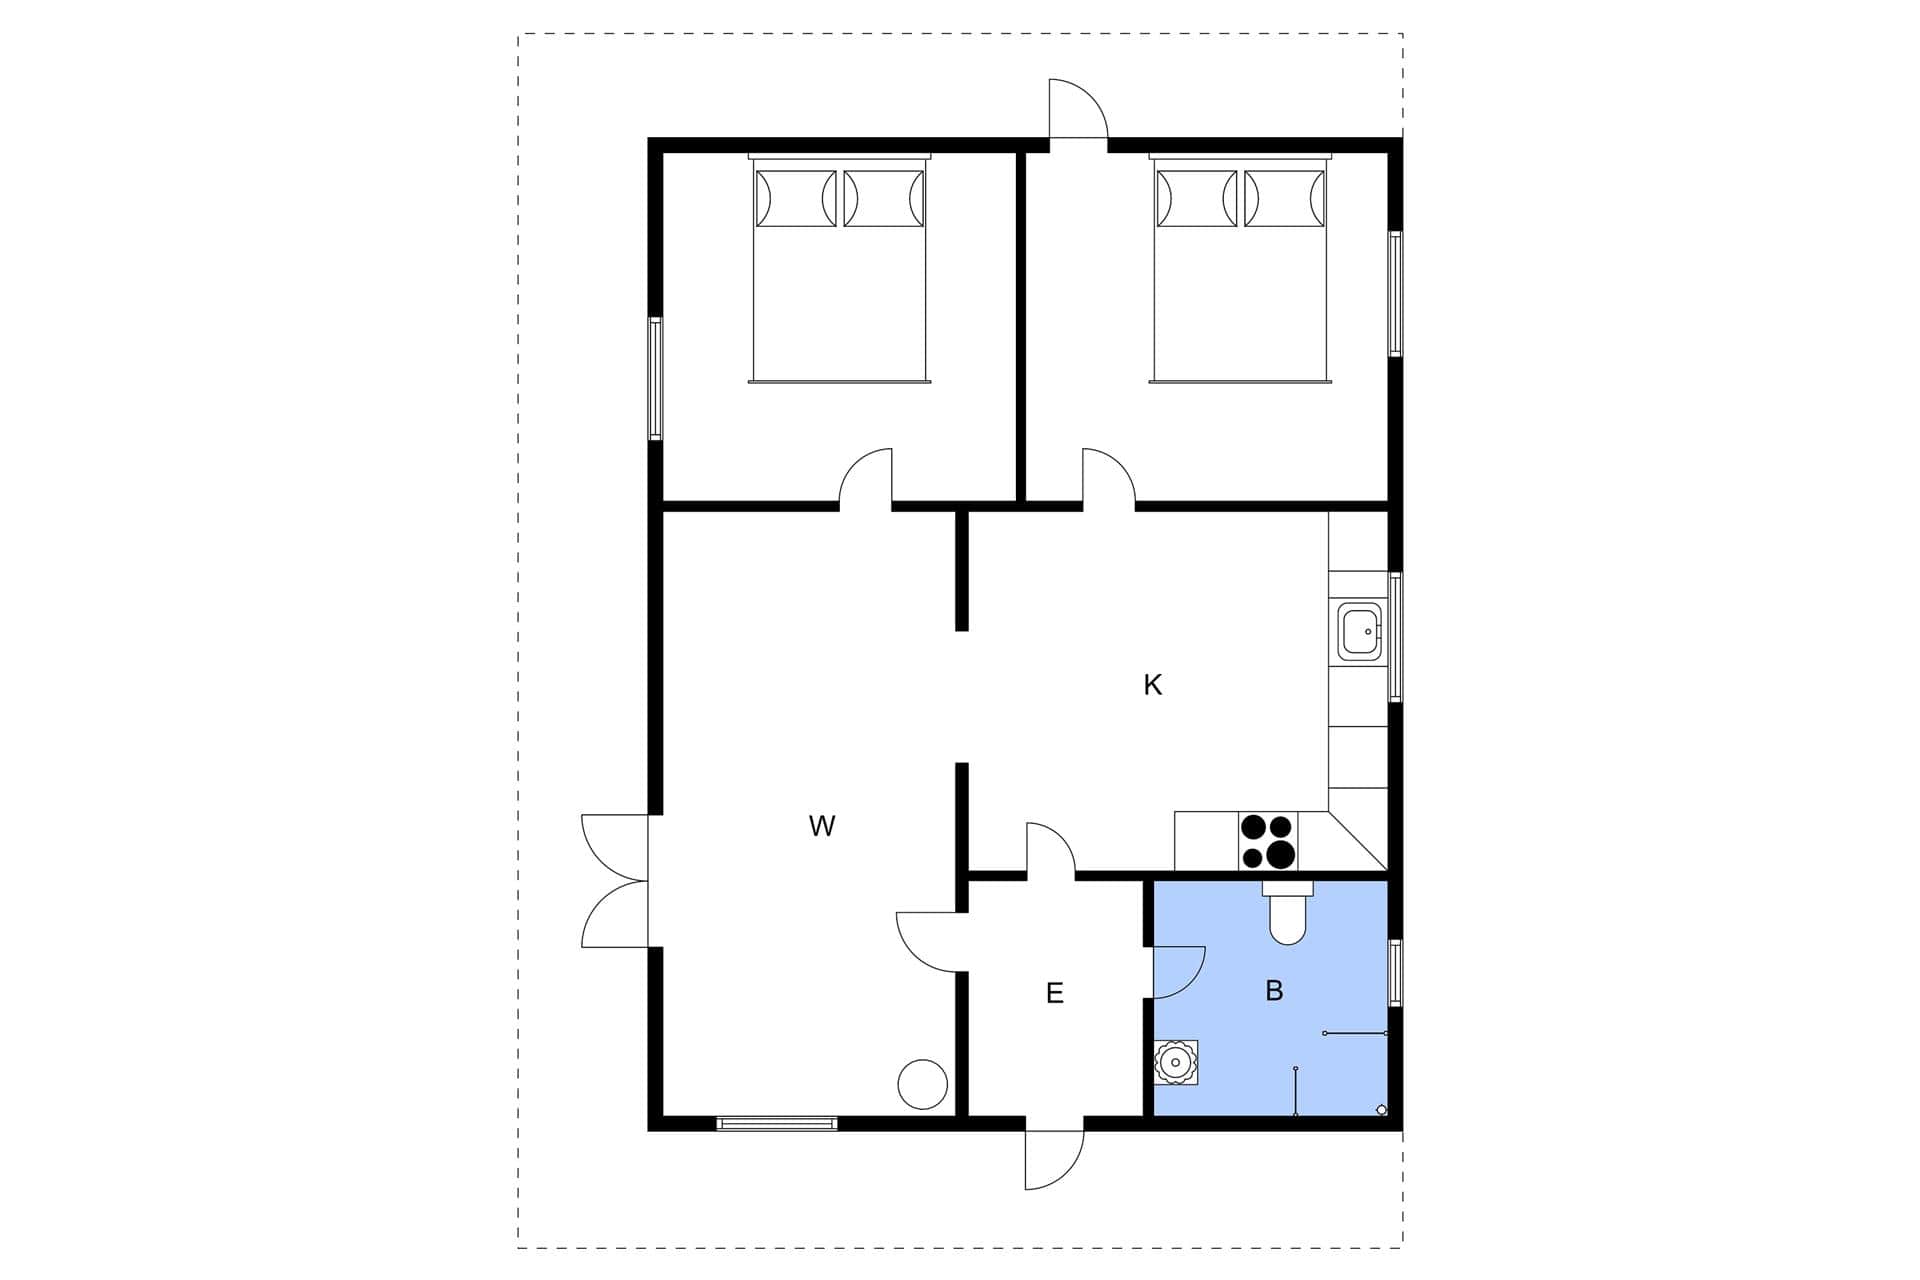 Interior 0-3 Holiday-home M642613, Provstebakken 3, DK - 5500 Middelfart